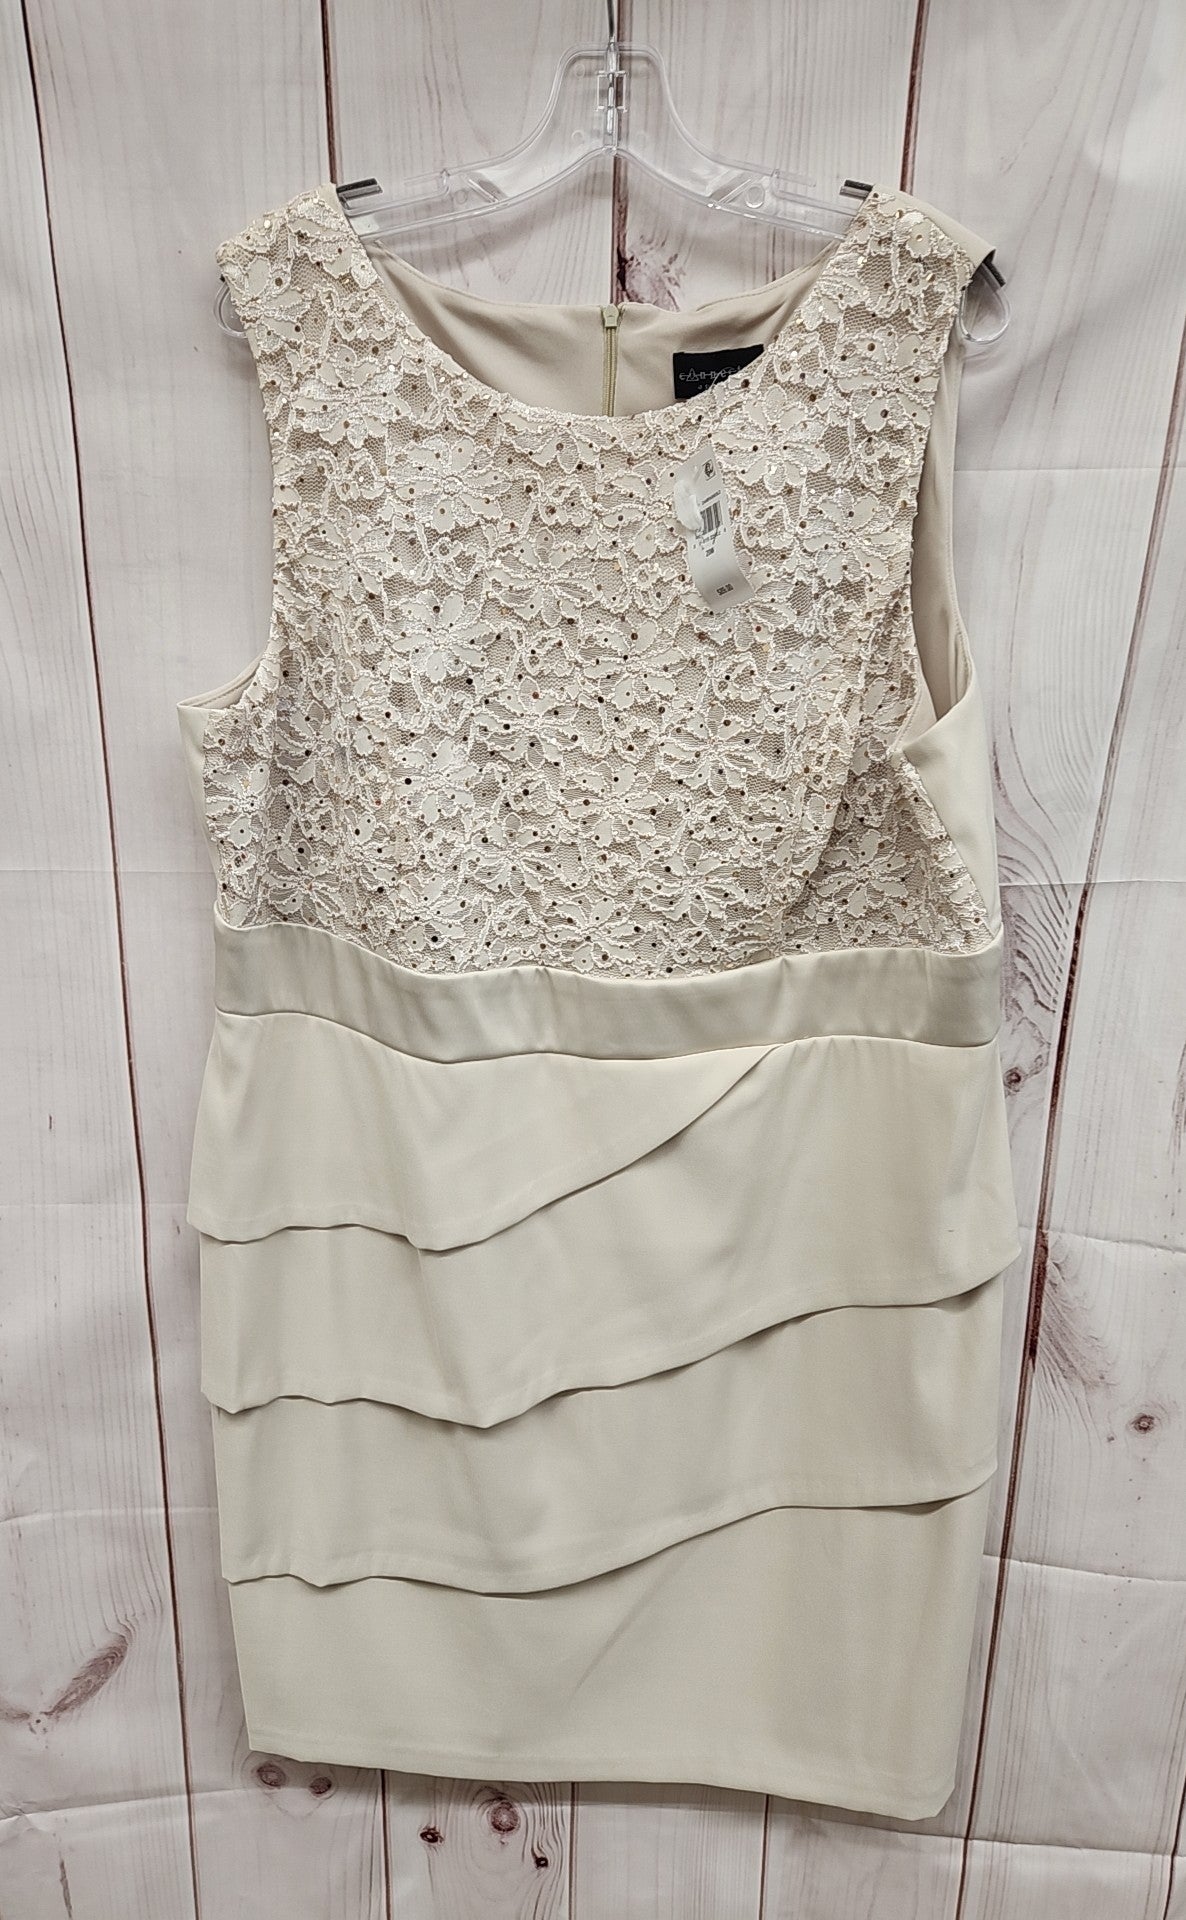 Connected Women's Size 20W Beige Dress